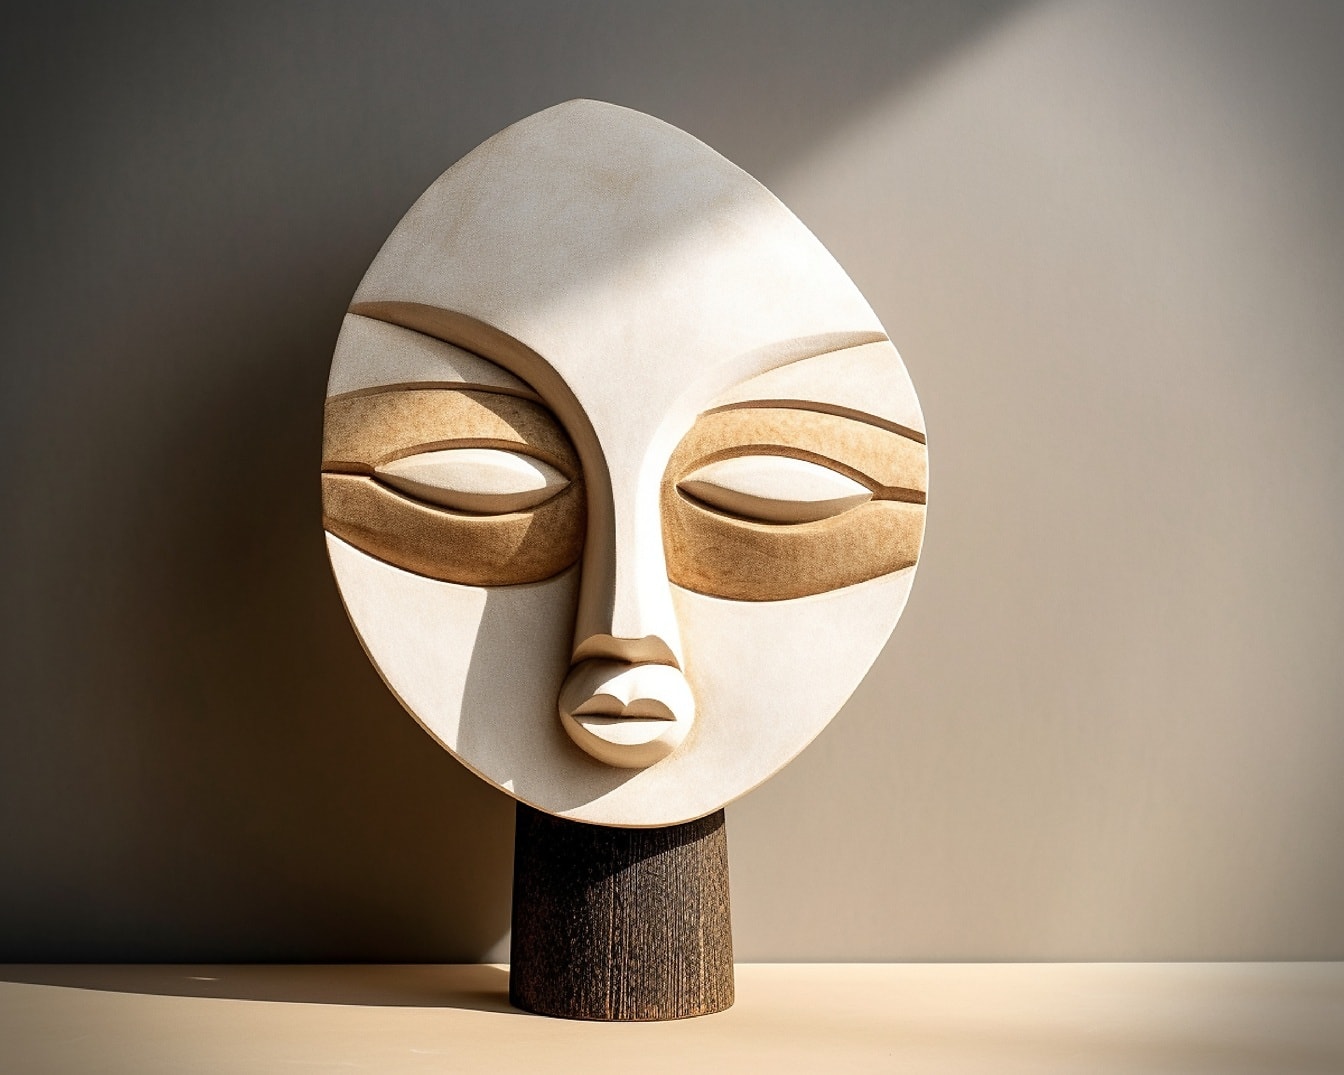 Chạm khắc thủ công mặt nạ bí ẩn tác phẩm nghệ thuật bằng gỗ